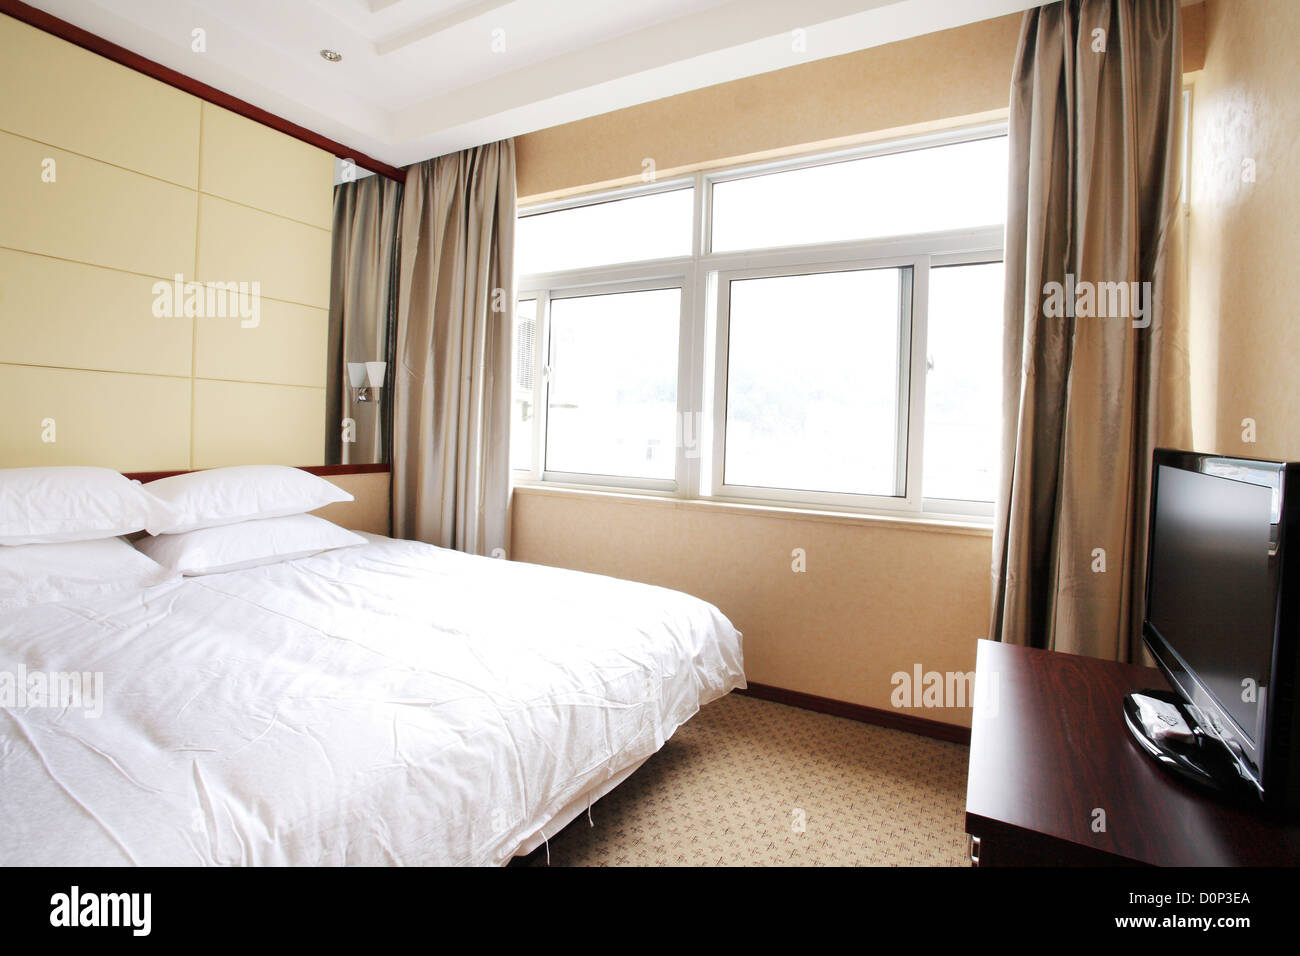 Ein Bett in einem Zimmer mit hellem Licht Stockfoto